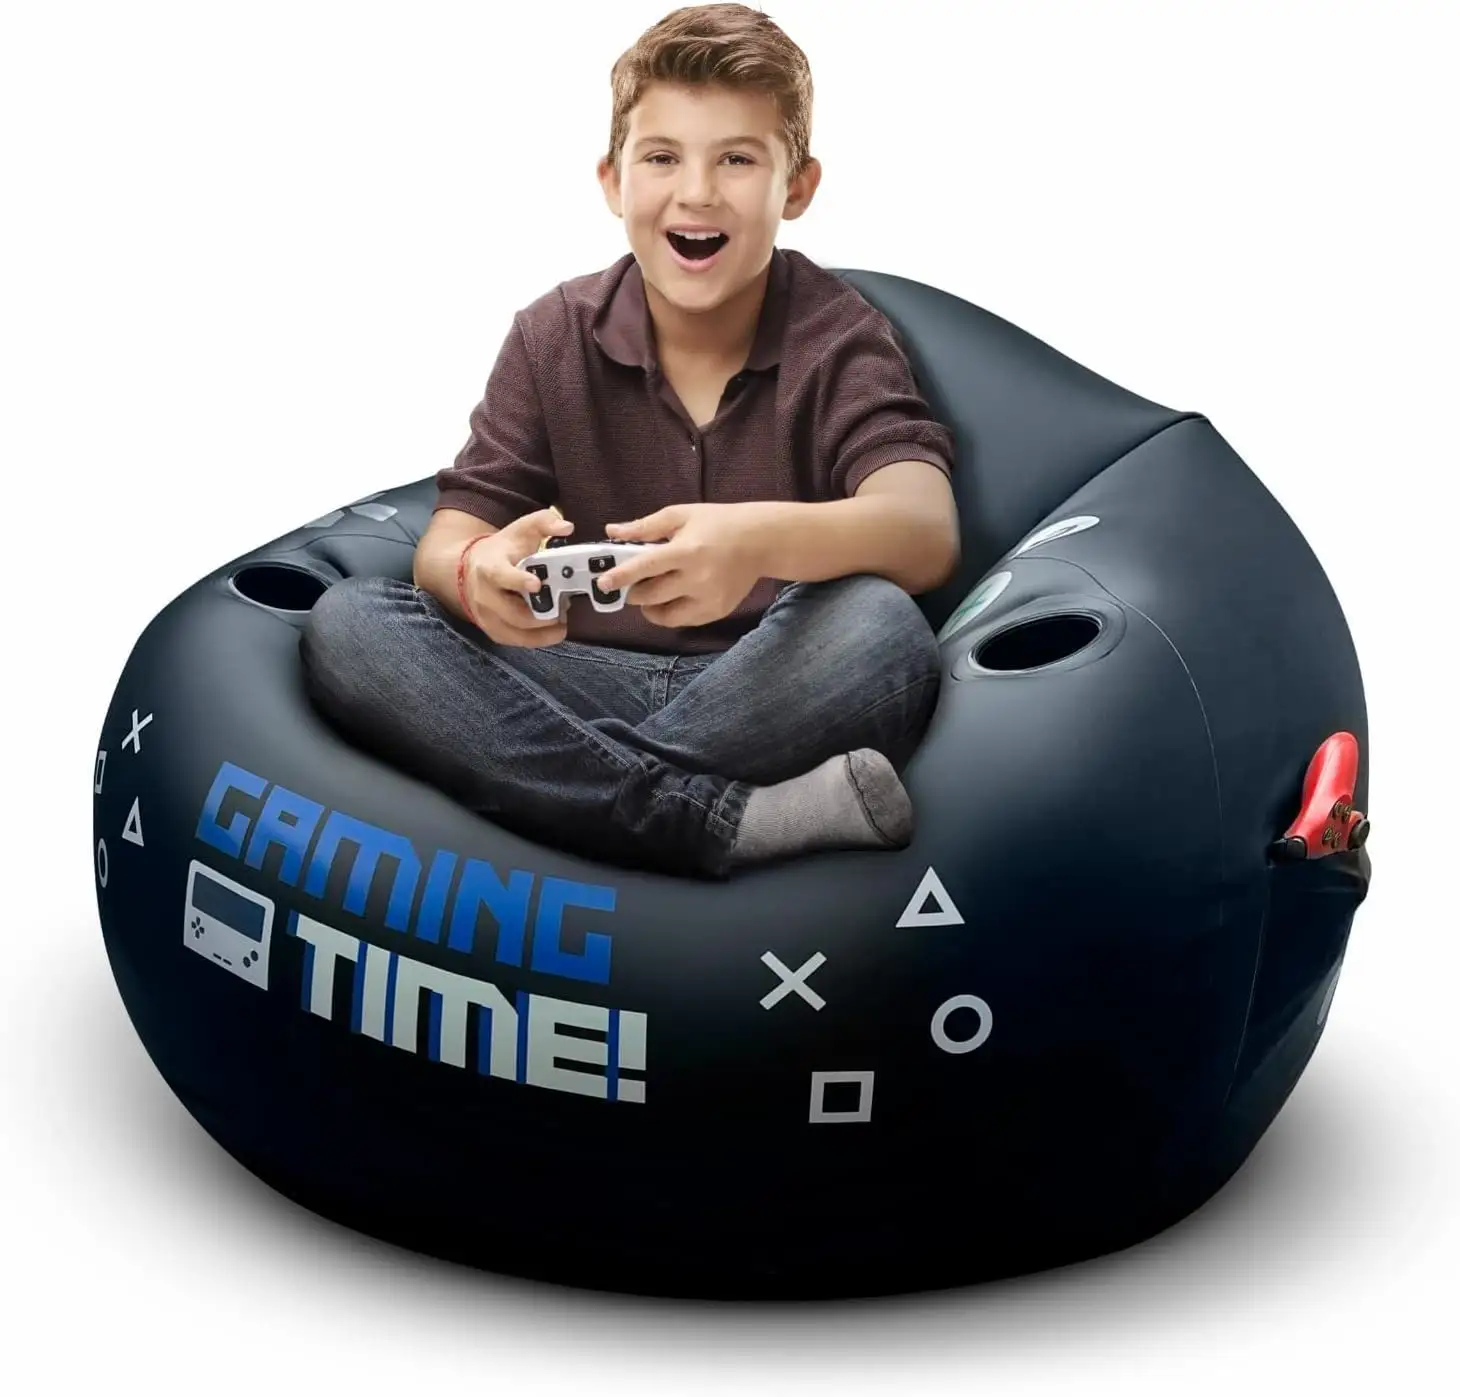 Không khí đậu Túi trò chơi ghế Inflatable trẻ em thanh thiếu niên chơi game Ghế cho trẻ em với cup chủ sở hữu và Side Pocket cho gamer phòng trang trí nội thất